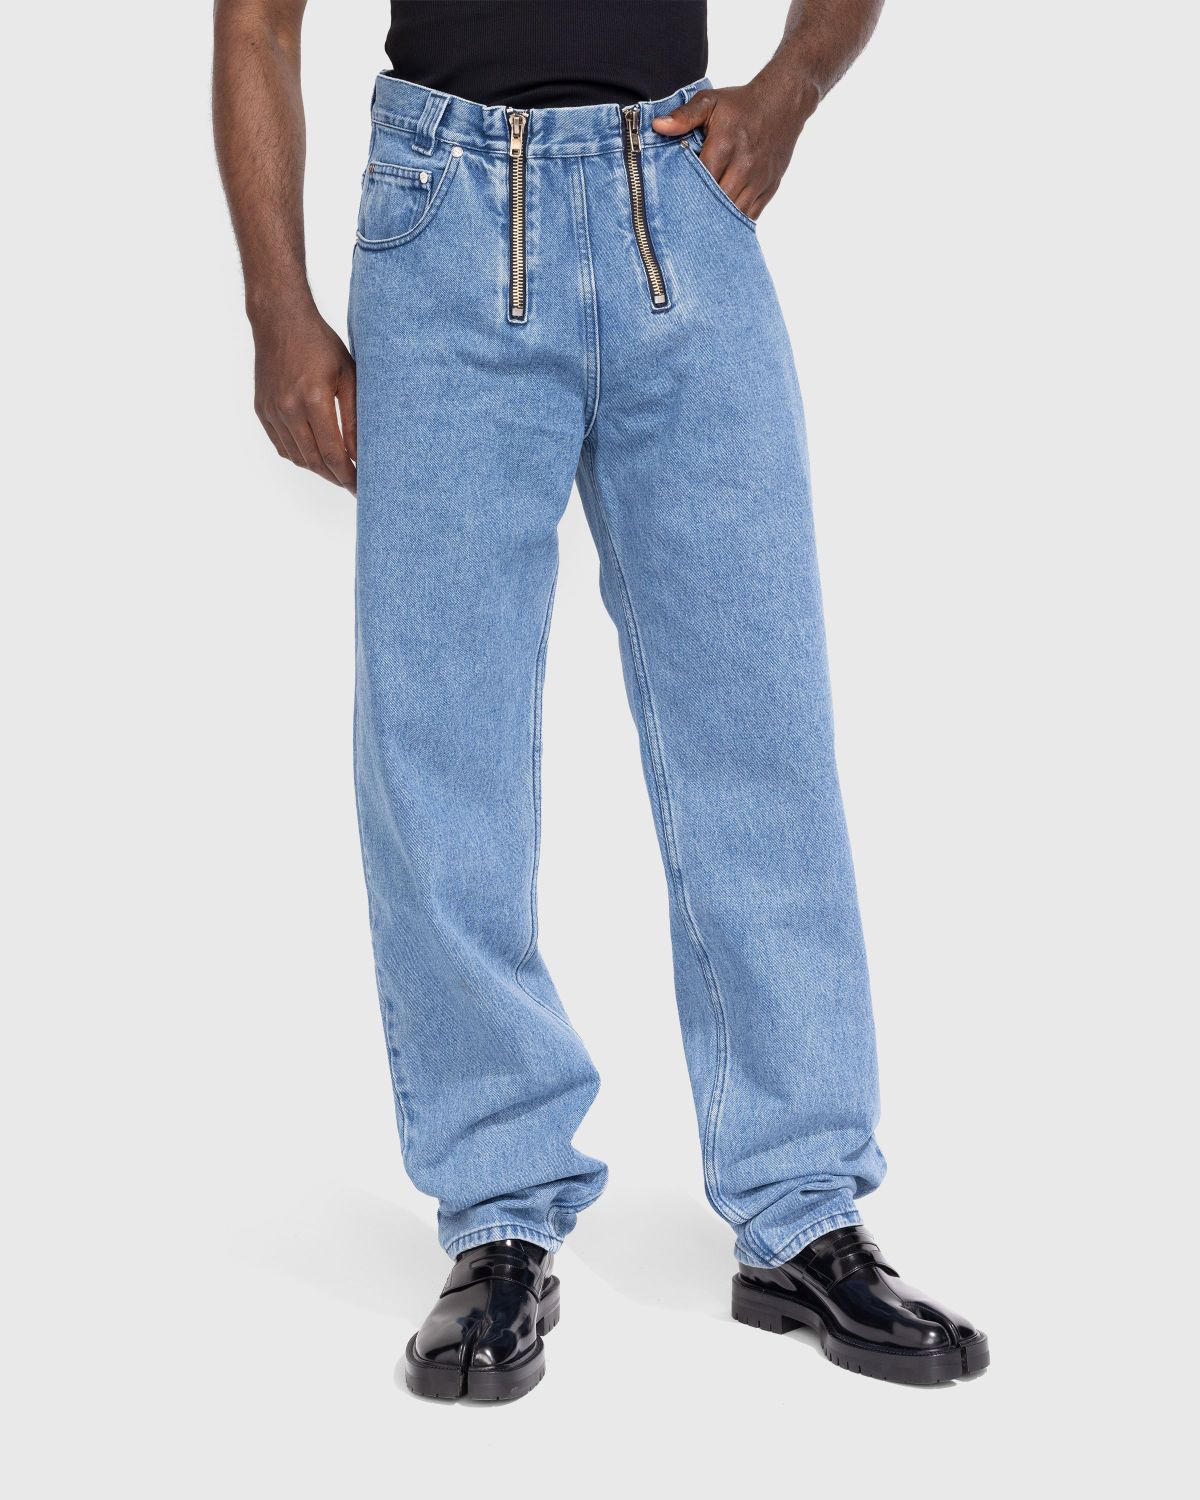 GmbH – Cyrus Denim Trousers Indigo Blue | Highsnobiety Shop